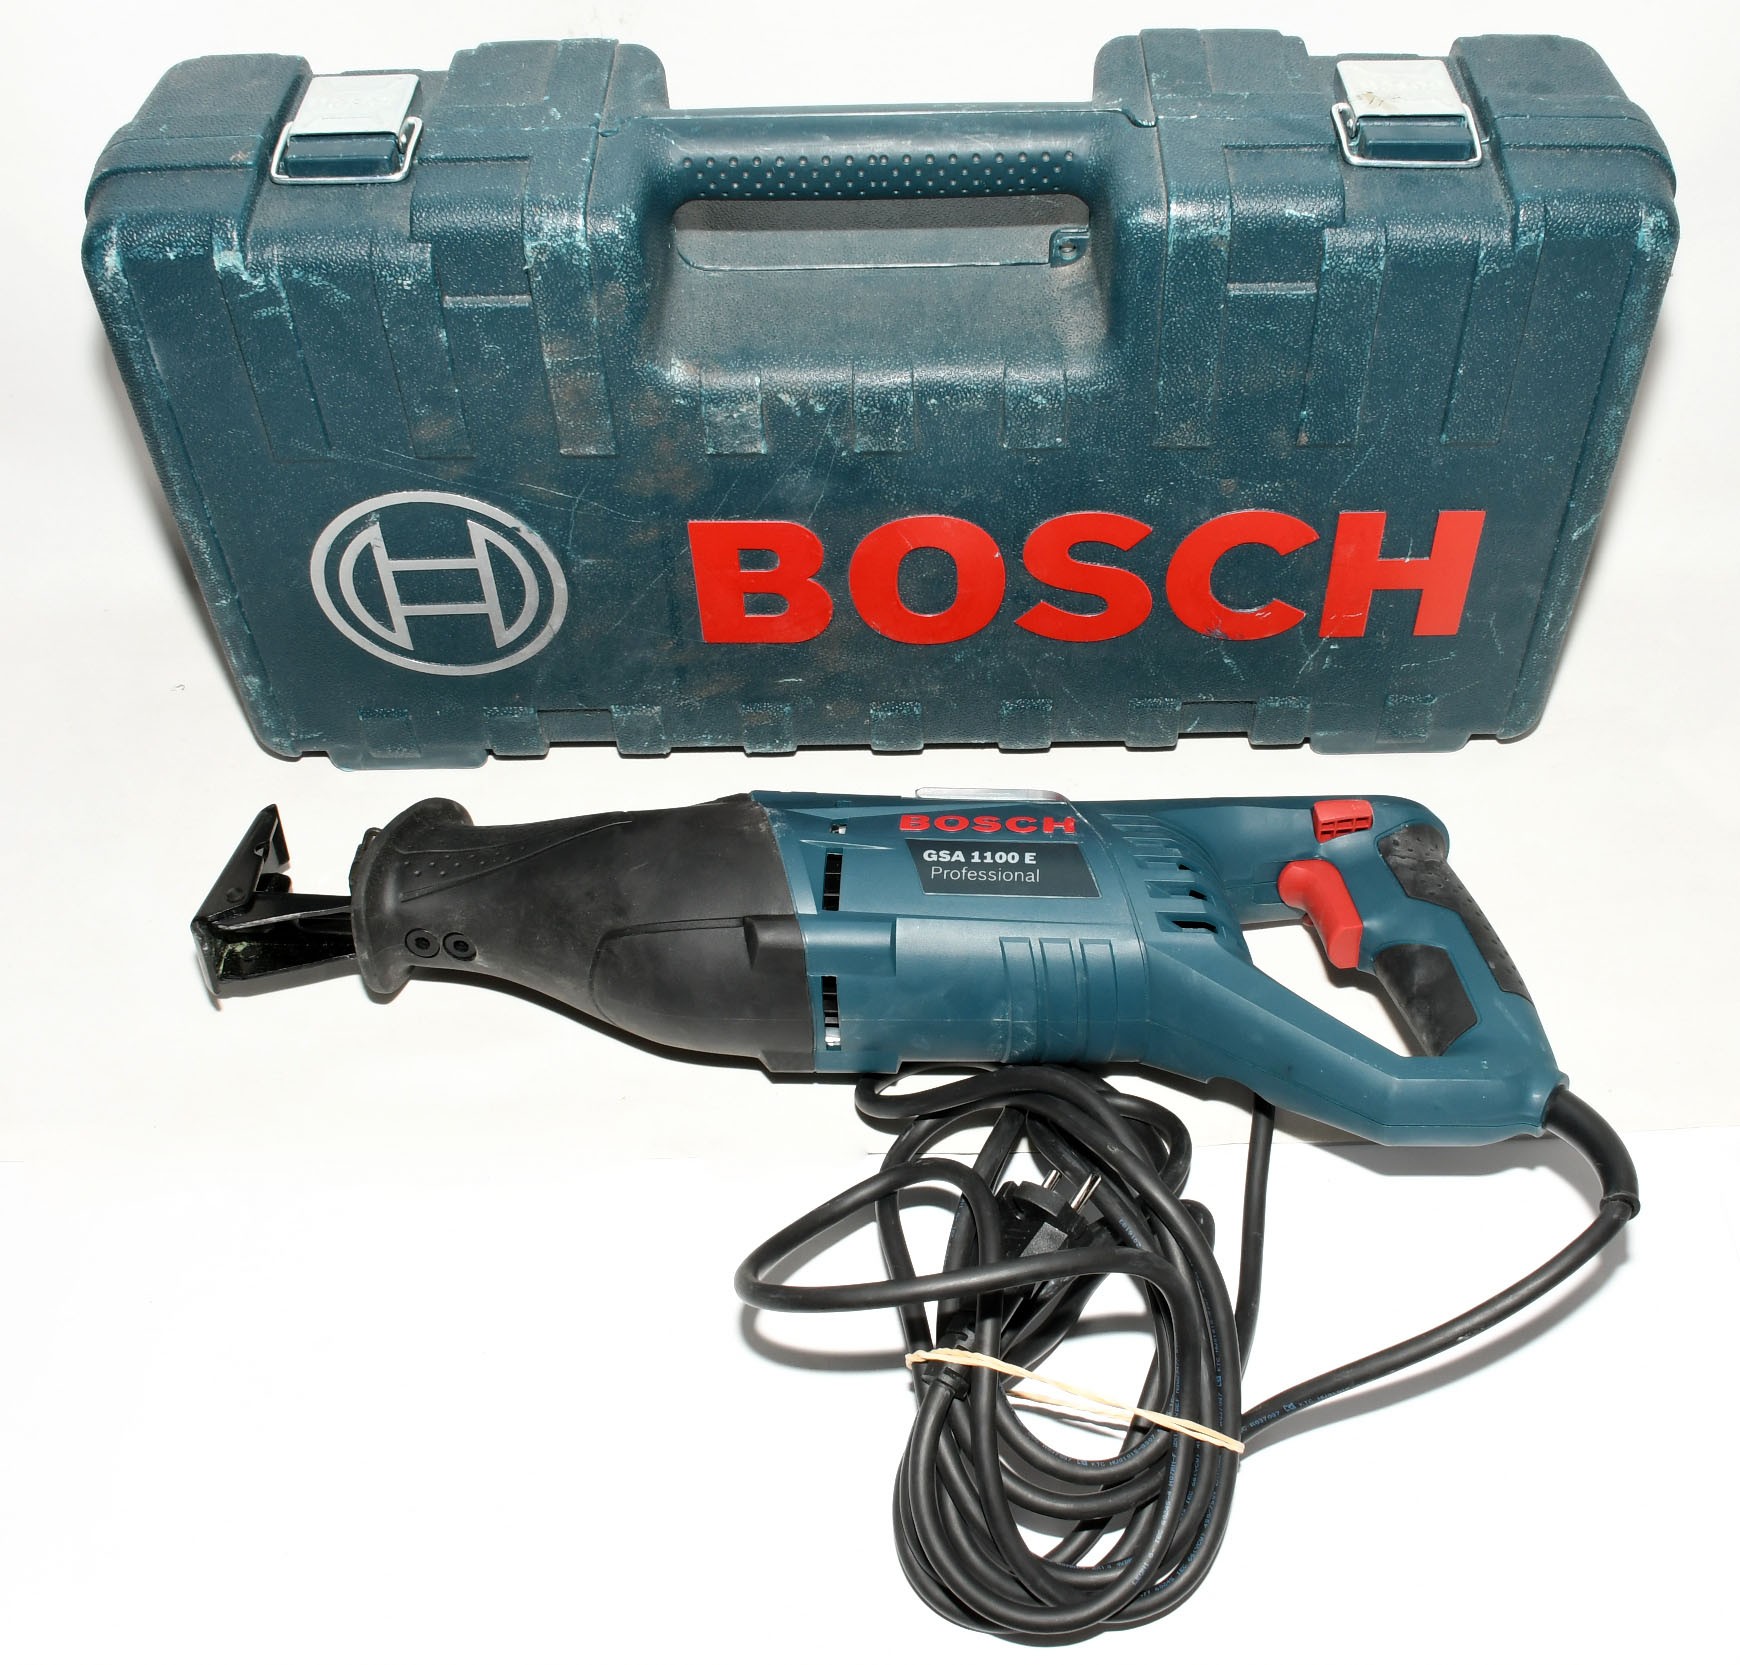 Bosch GSA 1100 E Sierra Sable